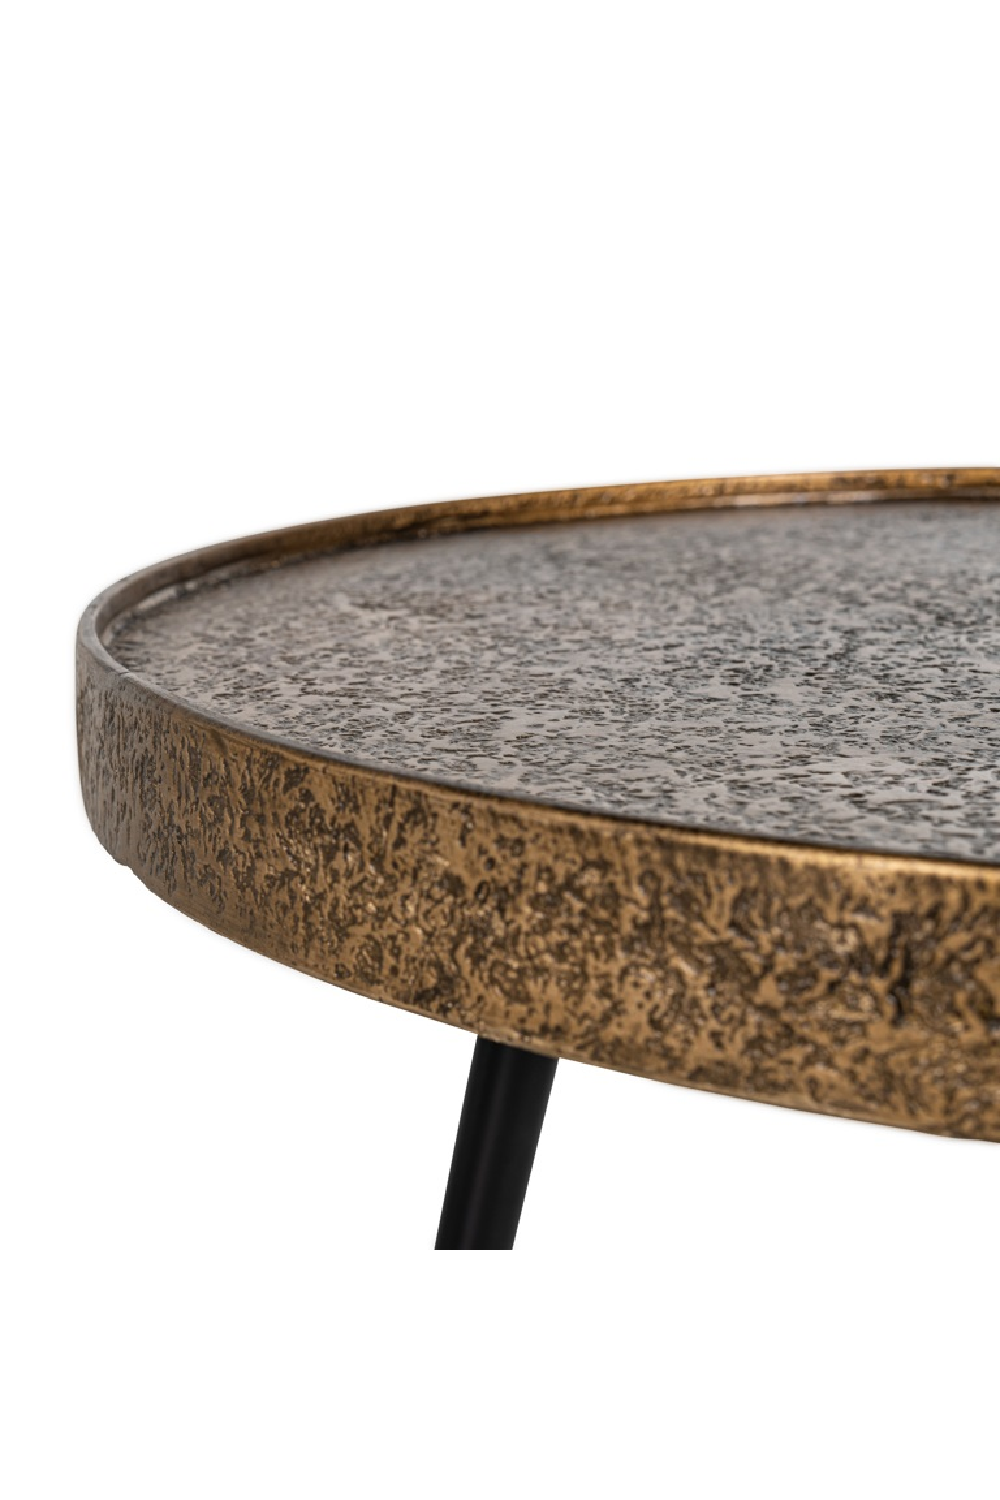 Rustic Gold Coffee Table Set (3) | OROA Luton | Oroa.com